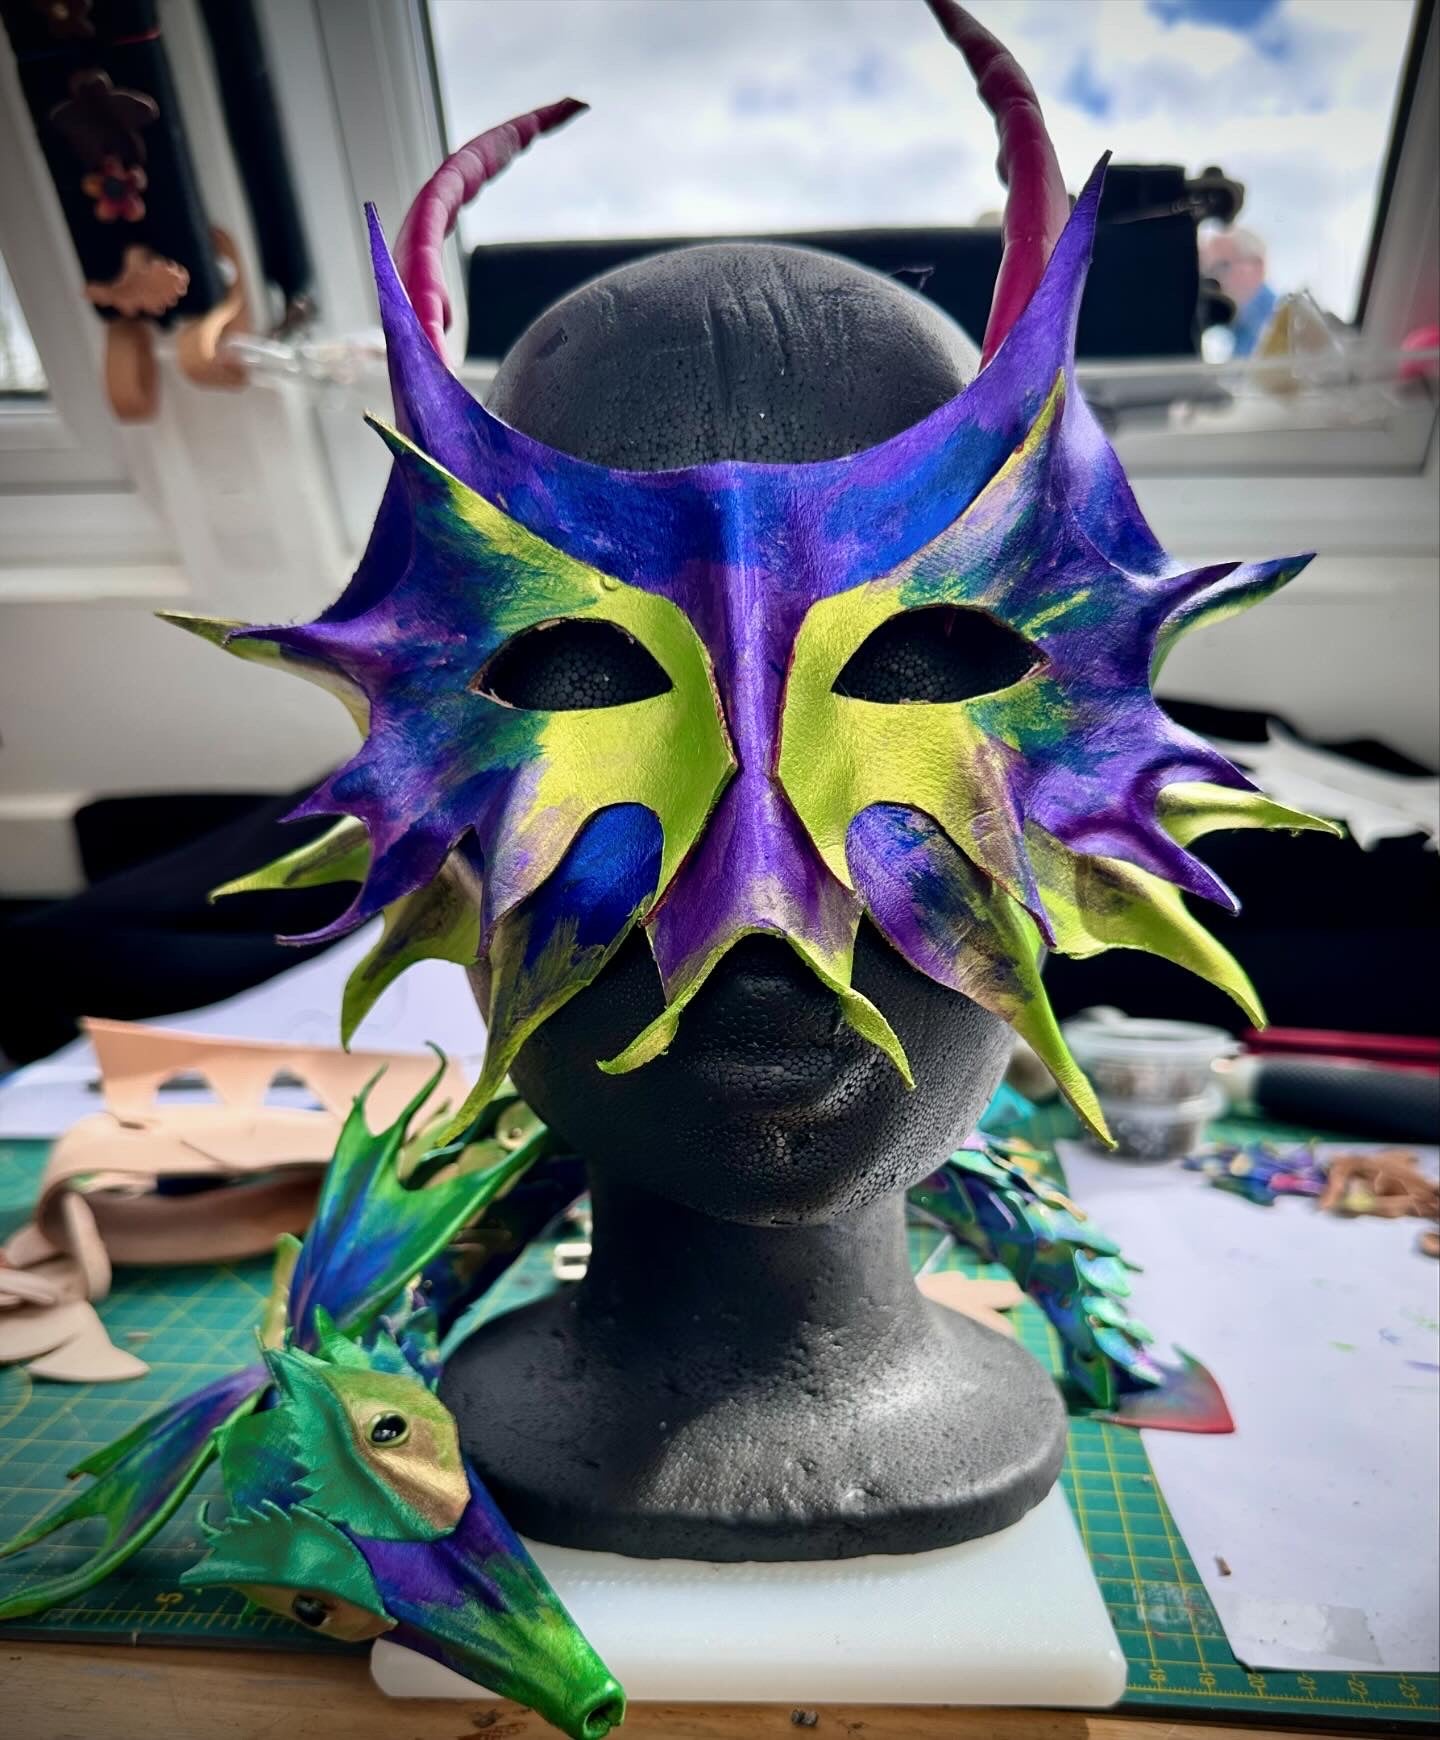 Mask making workshop - 3.5 hours